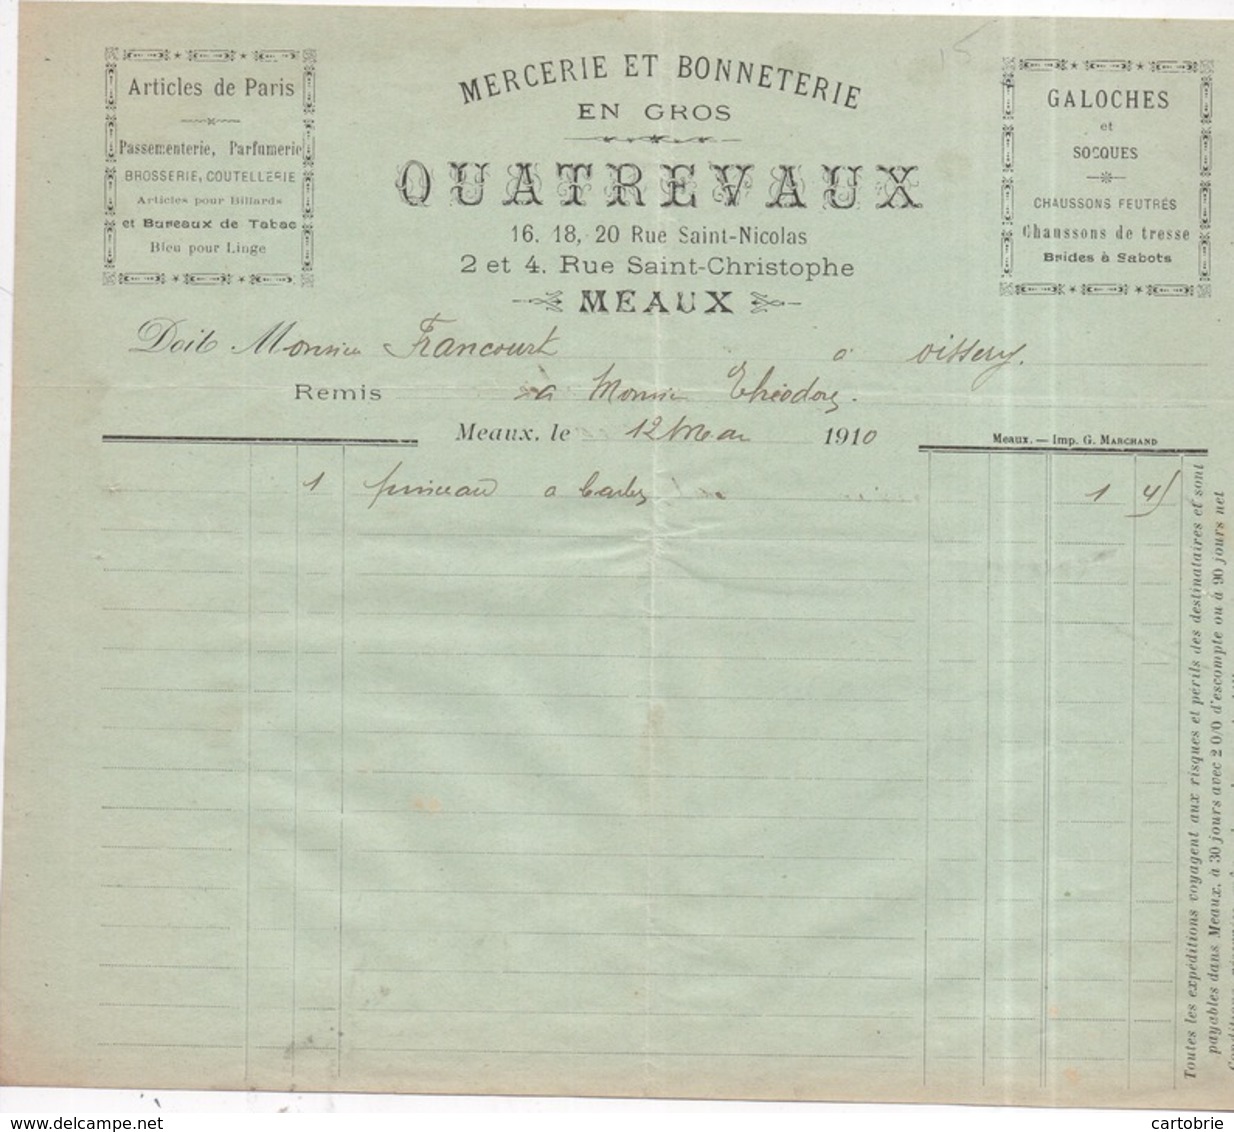 77 MEAUX - Galoches Mercerie Et Bonneterie En Gros QUATREVAUX, 16 Rue Saint-Nicolas - Facture 12 Mai 1910 - Meaux